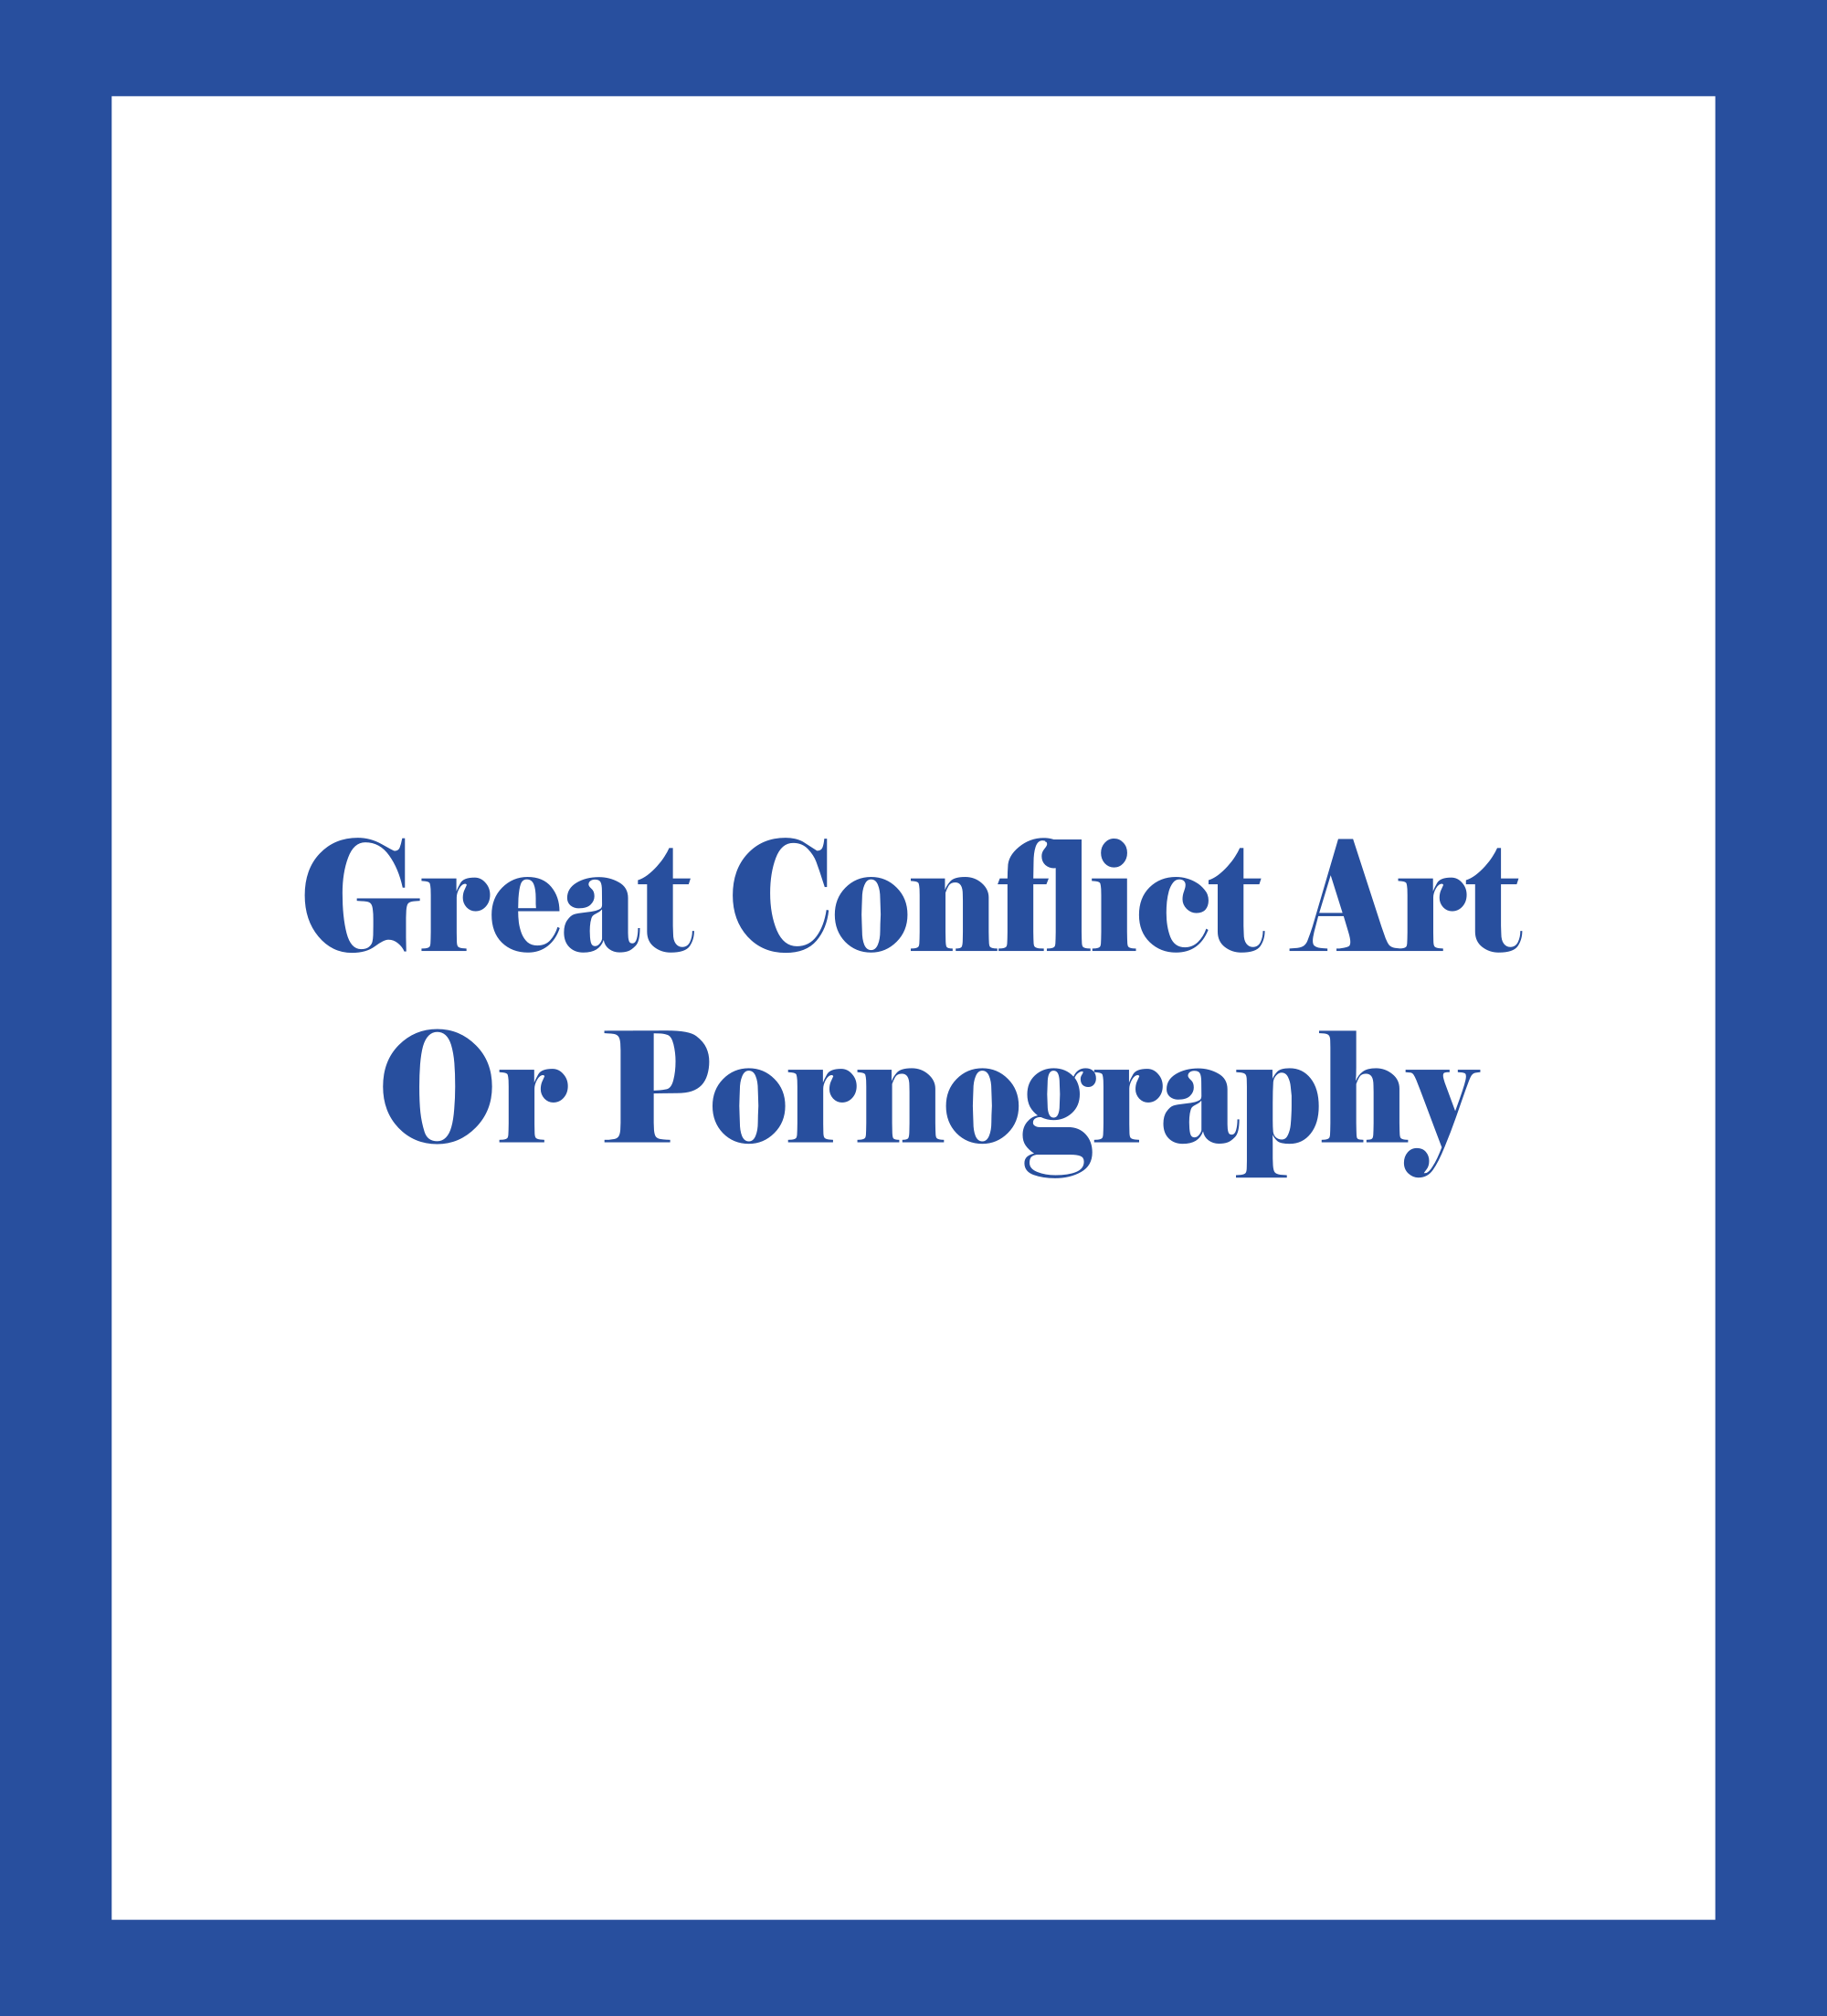 Caratula de Great Conflict Art Or Pornography (Gran conflicto arte o pornografía) 